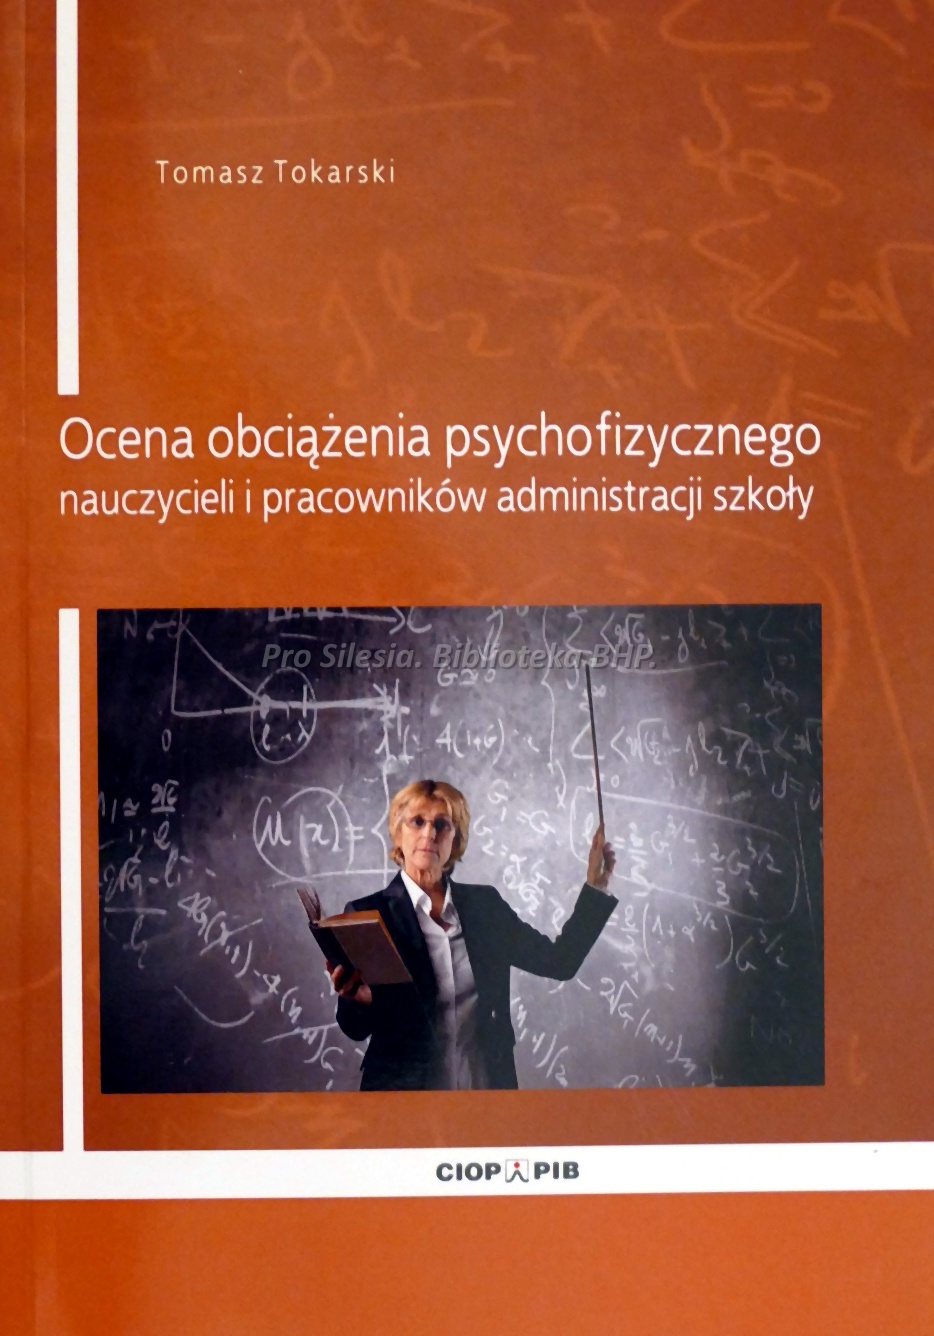 Ocena obciążenia psychofizycznego nauczycieli i pracowników administracji szkoły, wyd. CIOP-PIB